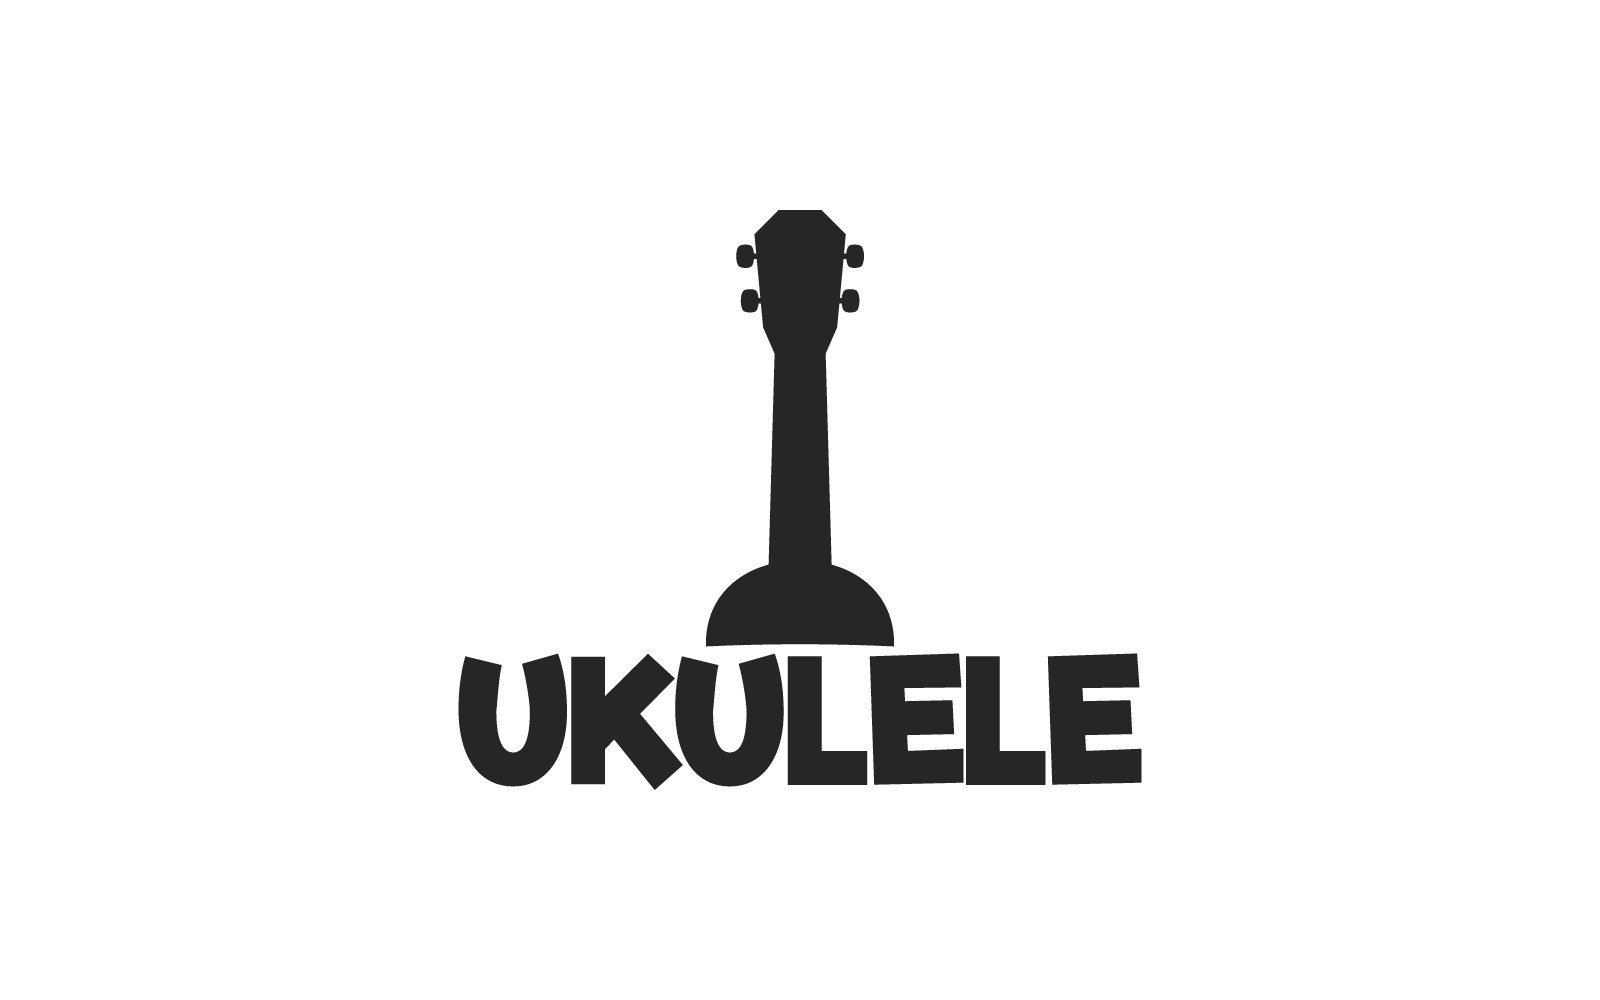 Ukulele icon flat design template